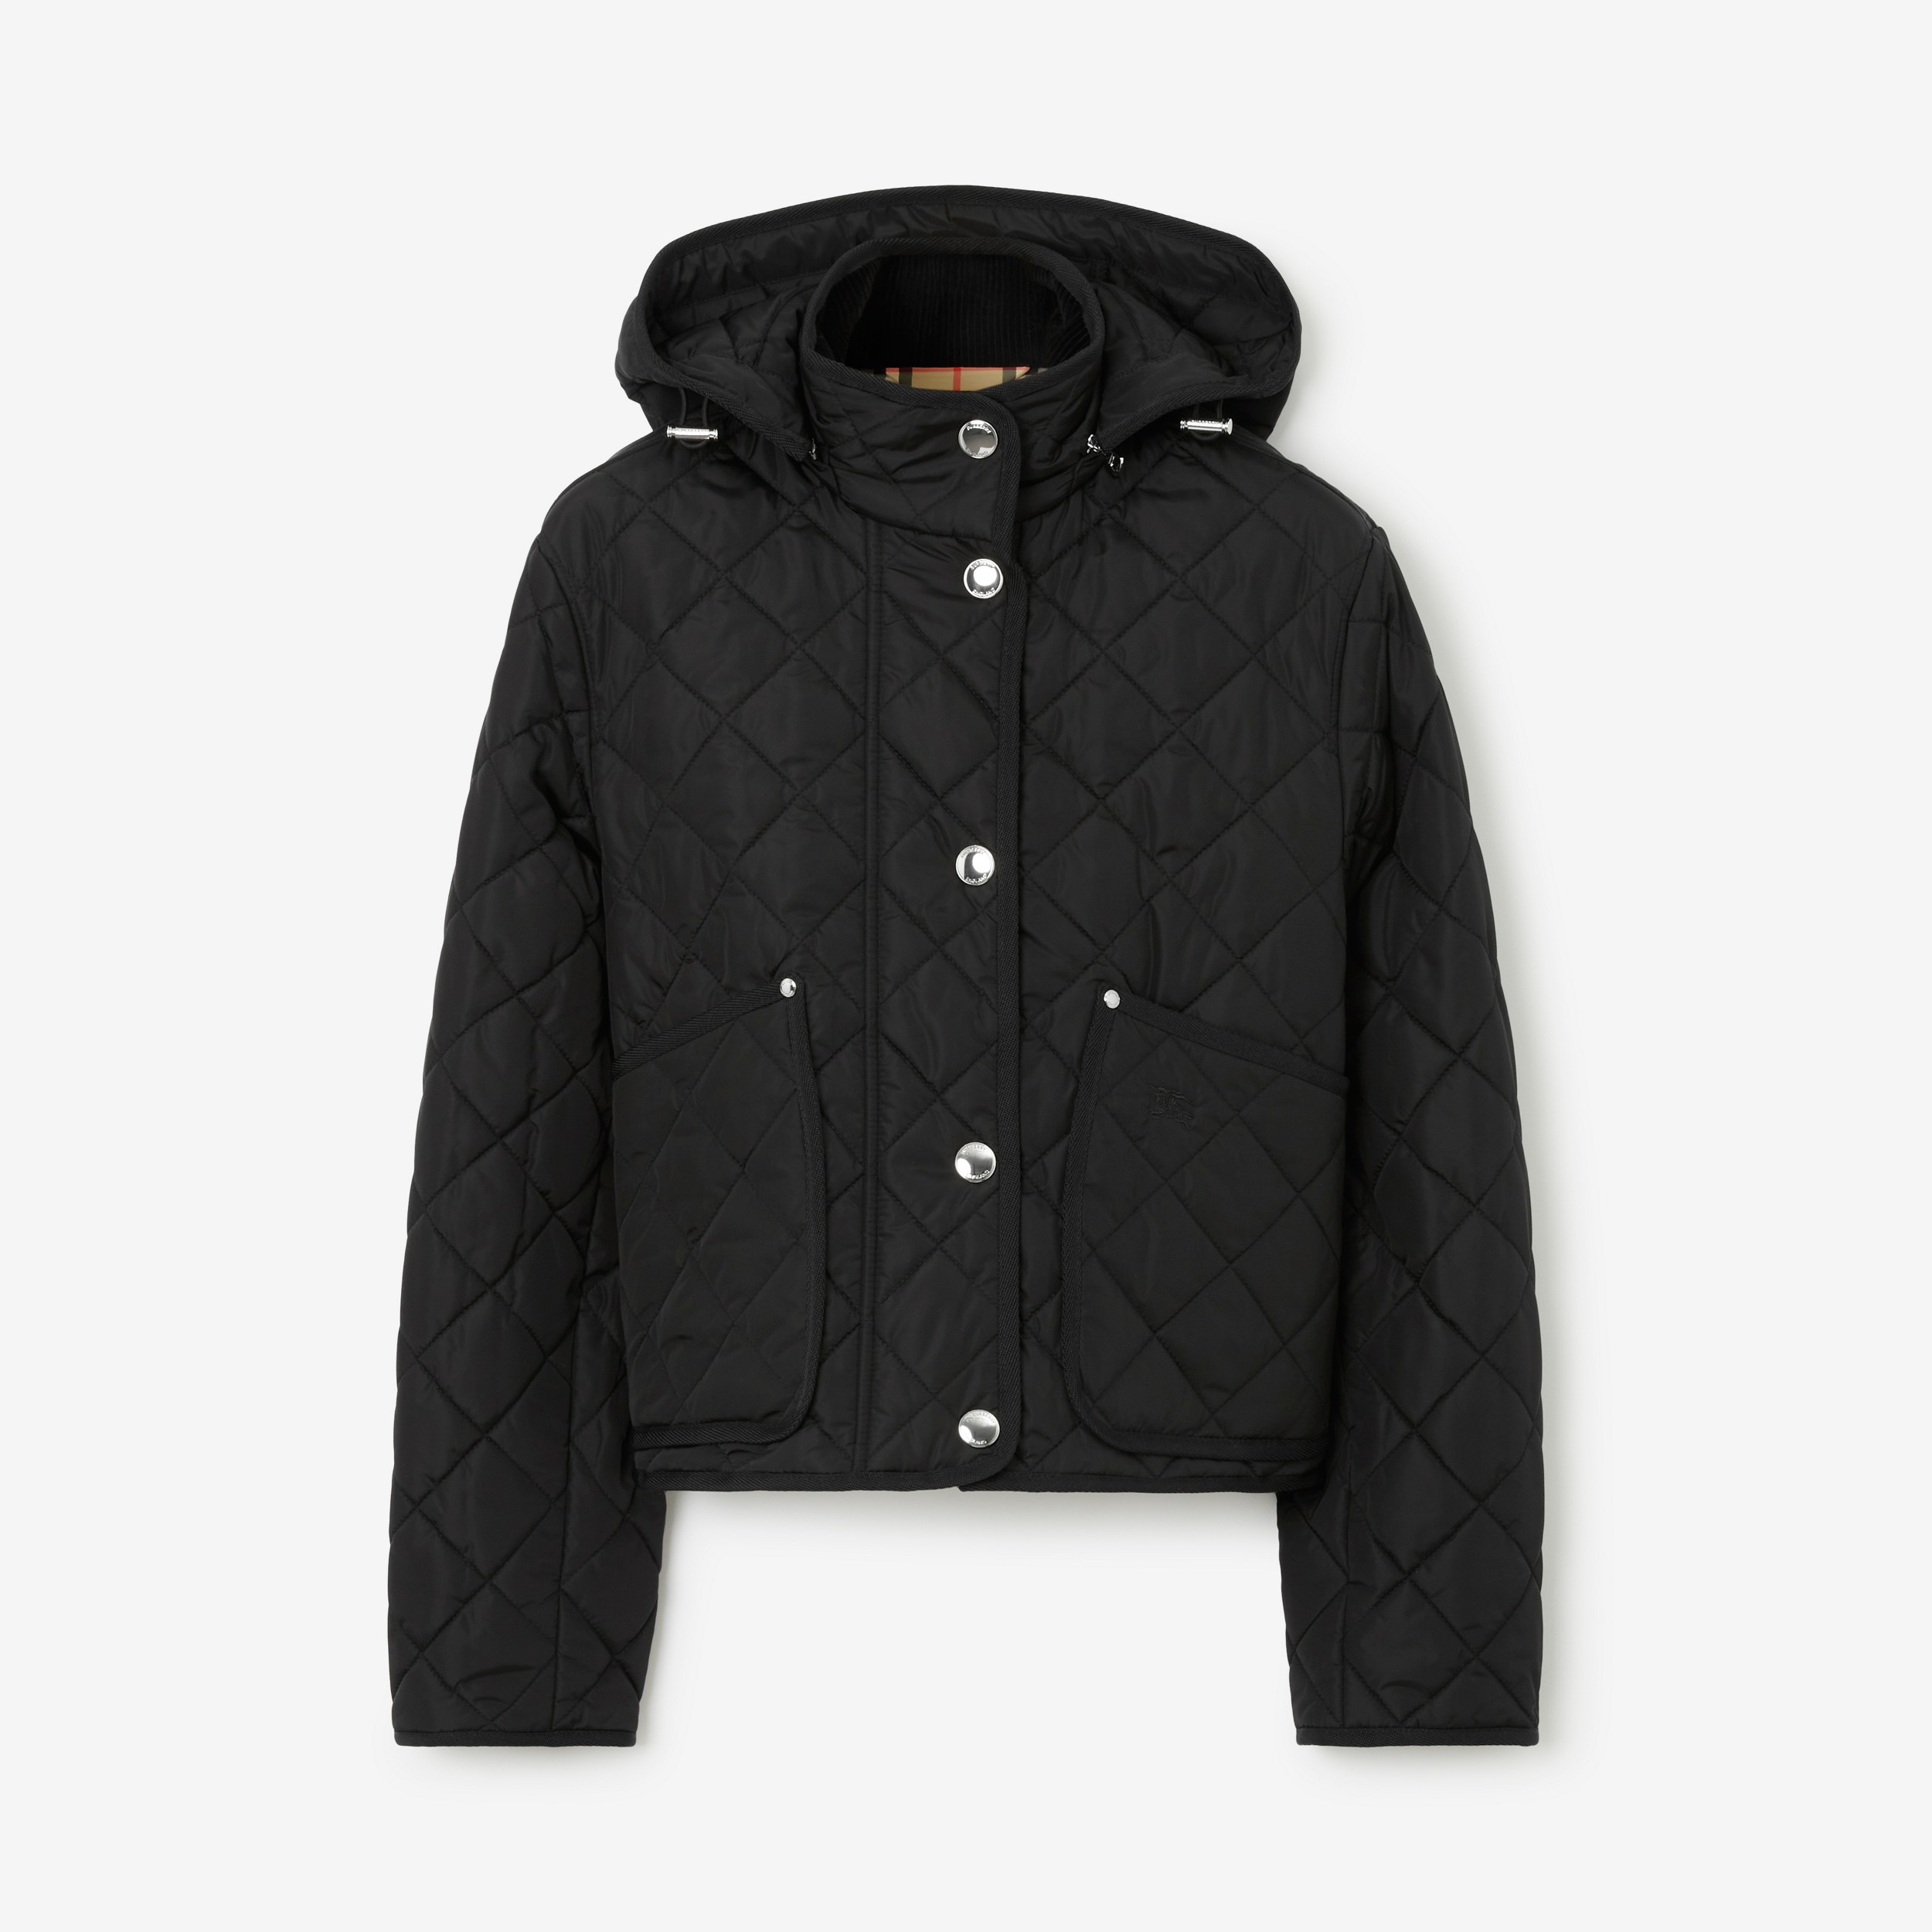 Cropped-Jacke aus Nylon in Rautensteppung (Schwarz) - Damen | Burberry® - 1